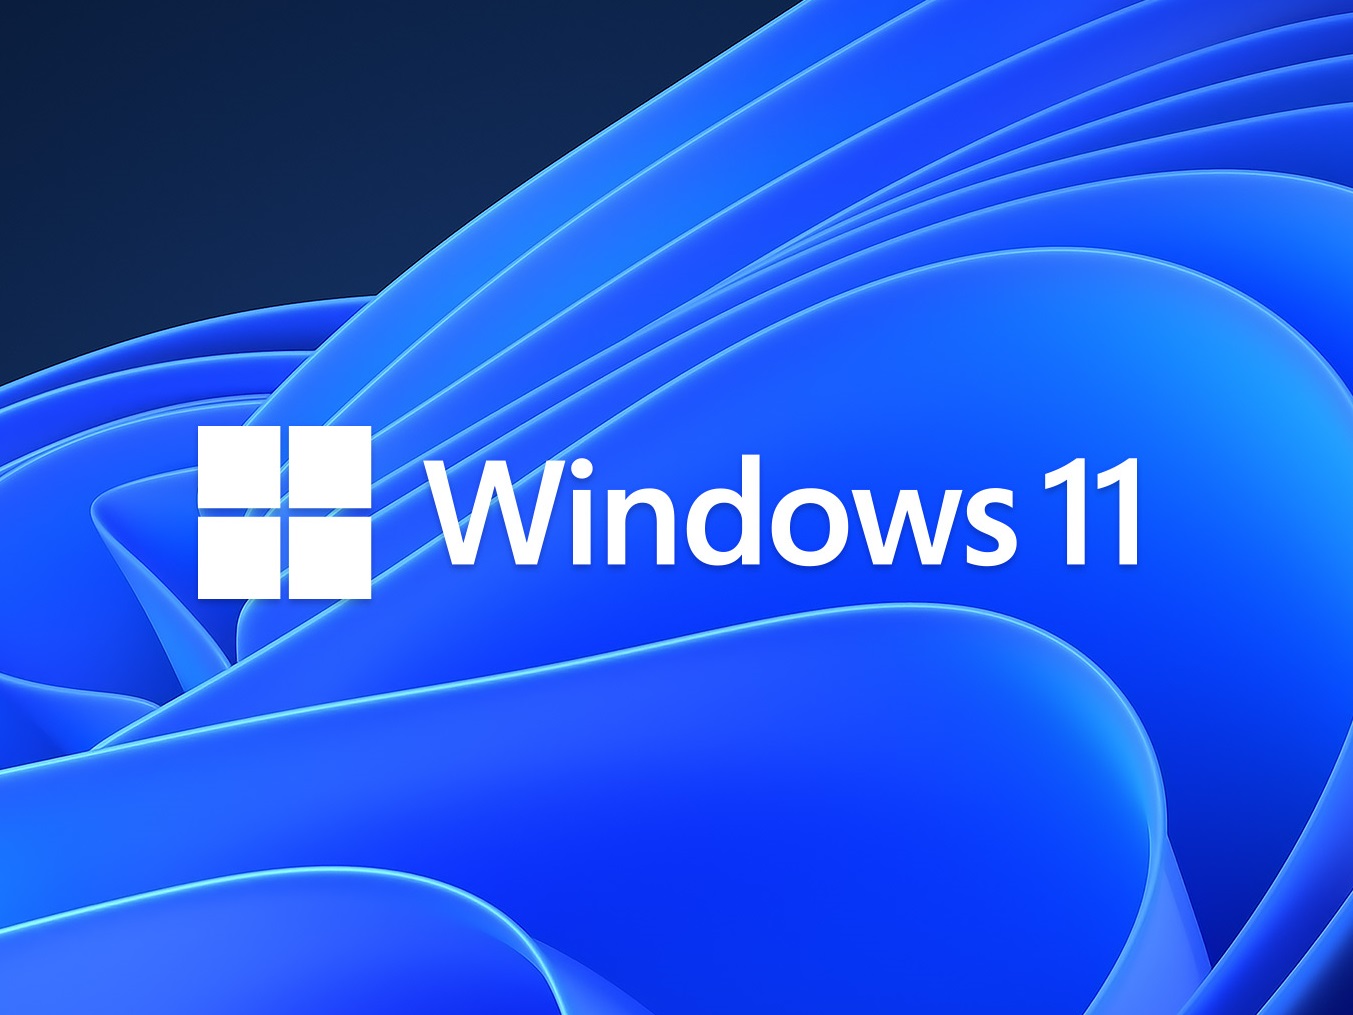 Windows 11 2022 là phiên bản mới nhất của hệ điều hành đình đám của Microsoft. Việc cài đặt Windows này đơn giản và dễ dàng hơn bao giờ hết, chỉ cần vài cú click chuột là xong. Hãy tham khảo hình ảnh liên quan để biết cách cài đặt Windows 11 2022 và trải nghiệm tính năng mới nhất của Microsoft.